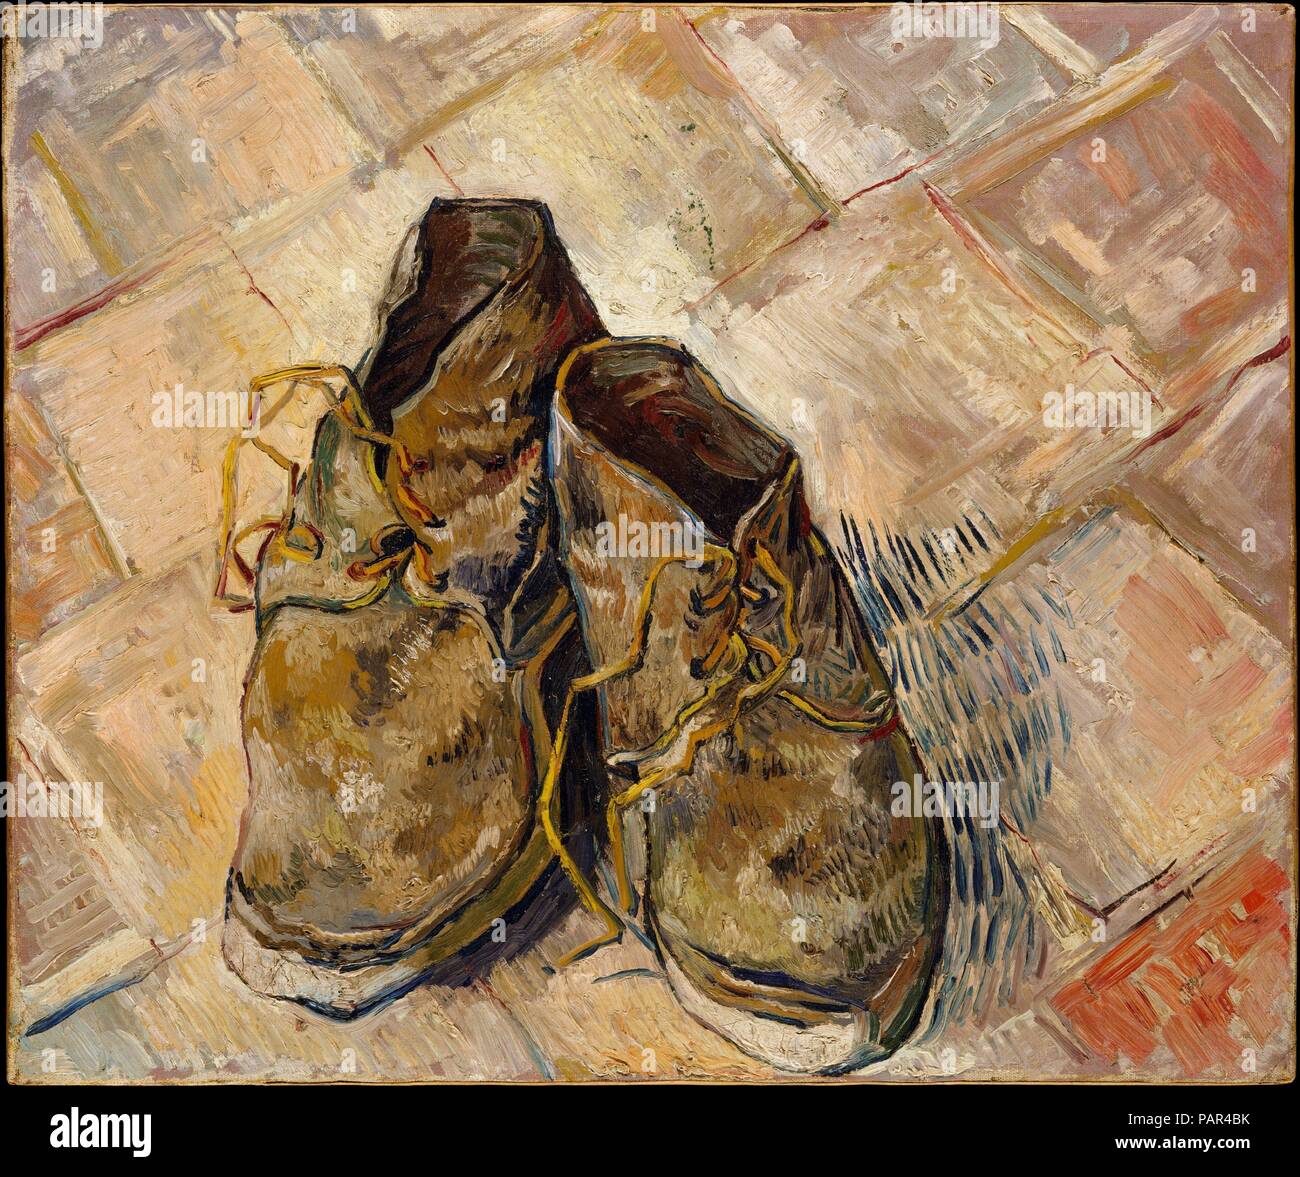 Scarpe. Artista: Vincent van Gogh (Olandese, Zundert 1853-1890  Auvers-sur-Oise). Dimensioni: 18 x 21 3/4 in. (45,7 x 55,2 cm). Data: 1888. Van  Gogh dipinto diverse nature morte di scarpe o stivali durante